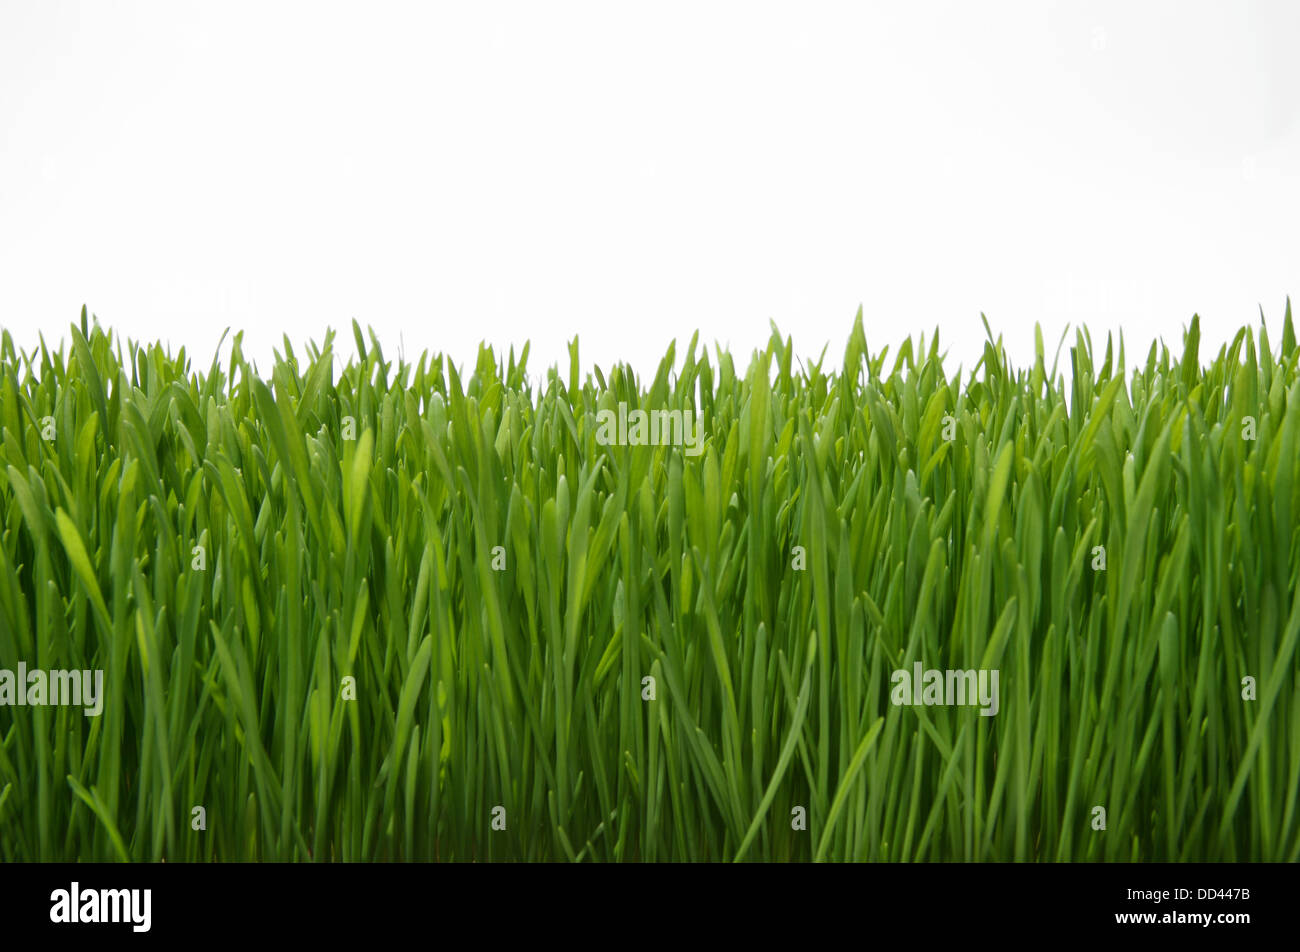 Ein Teil der wachsenden grünen Rasen auf einem weißen Hintergrund Stockfoto